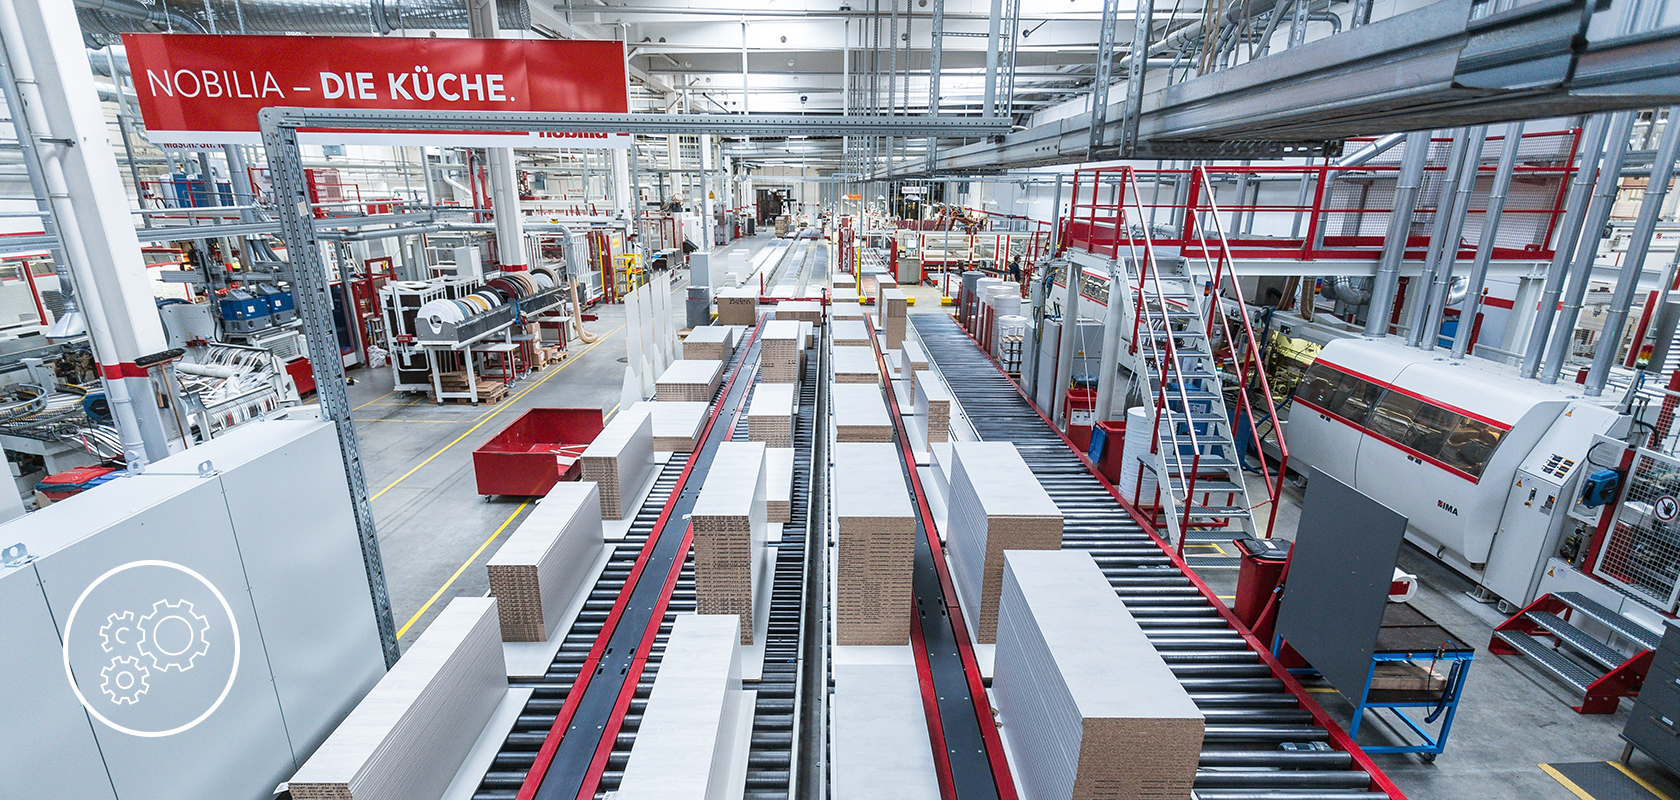 Un amplio y moderno piso de fabricación lleno de maquinaria automatizada y cintas transportadoras que manejan la producción eficiente de bienes en una instalación limpia y bien iluminada.